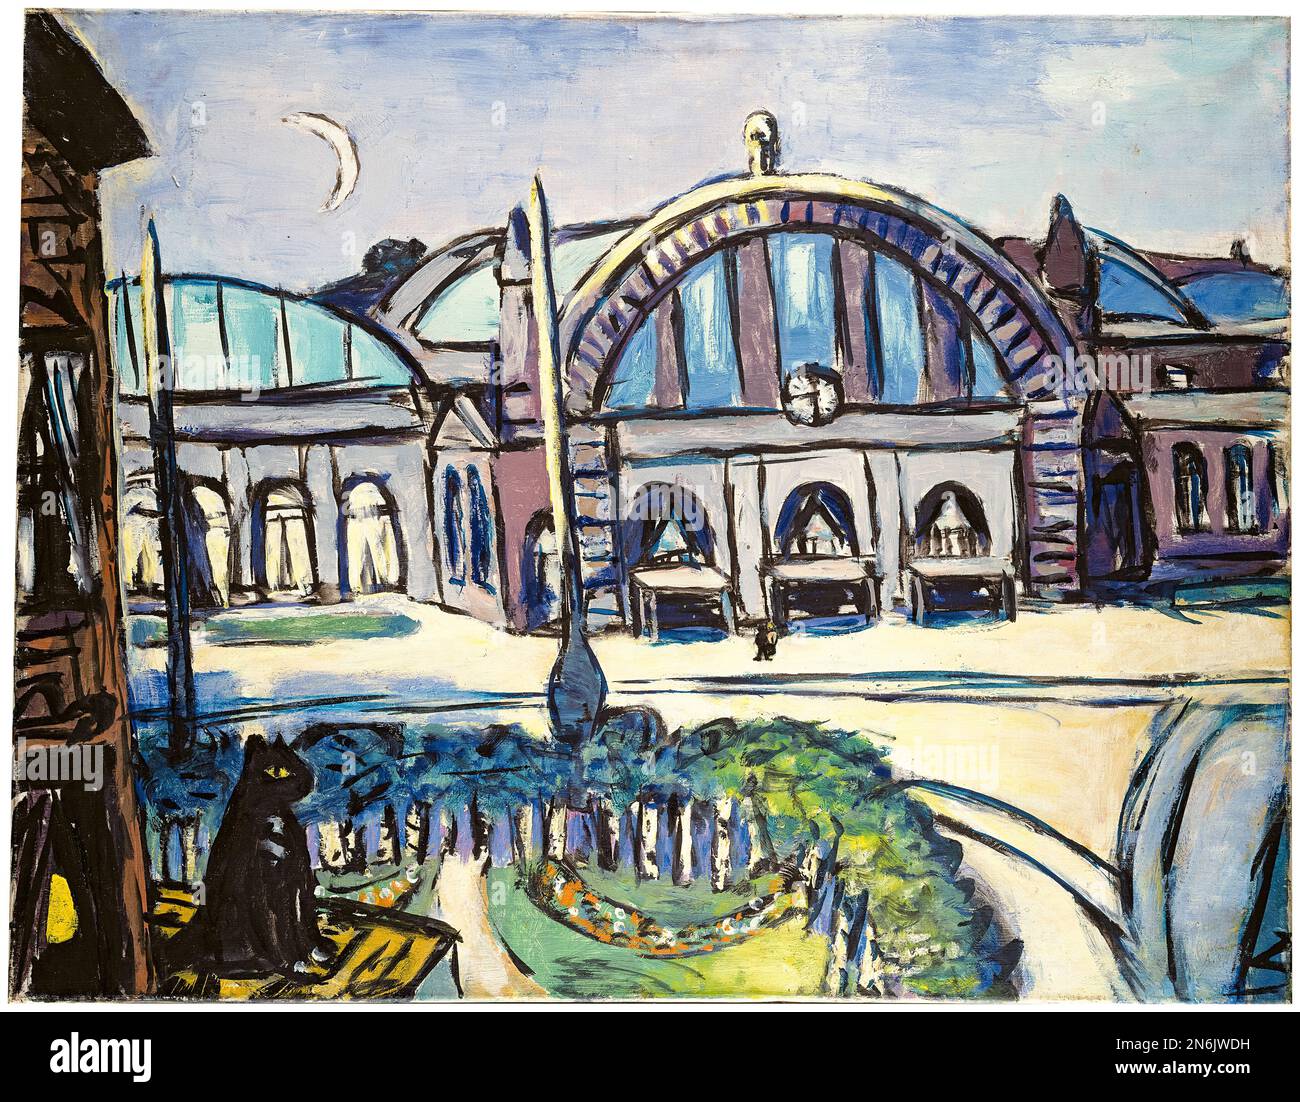 Gare centrale de Francfort, peinture à l'huile sur toile par Max Beckmann, 1943 Banque D'Images